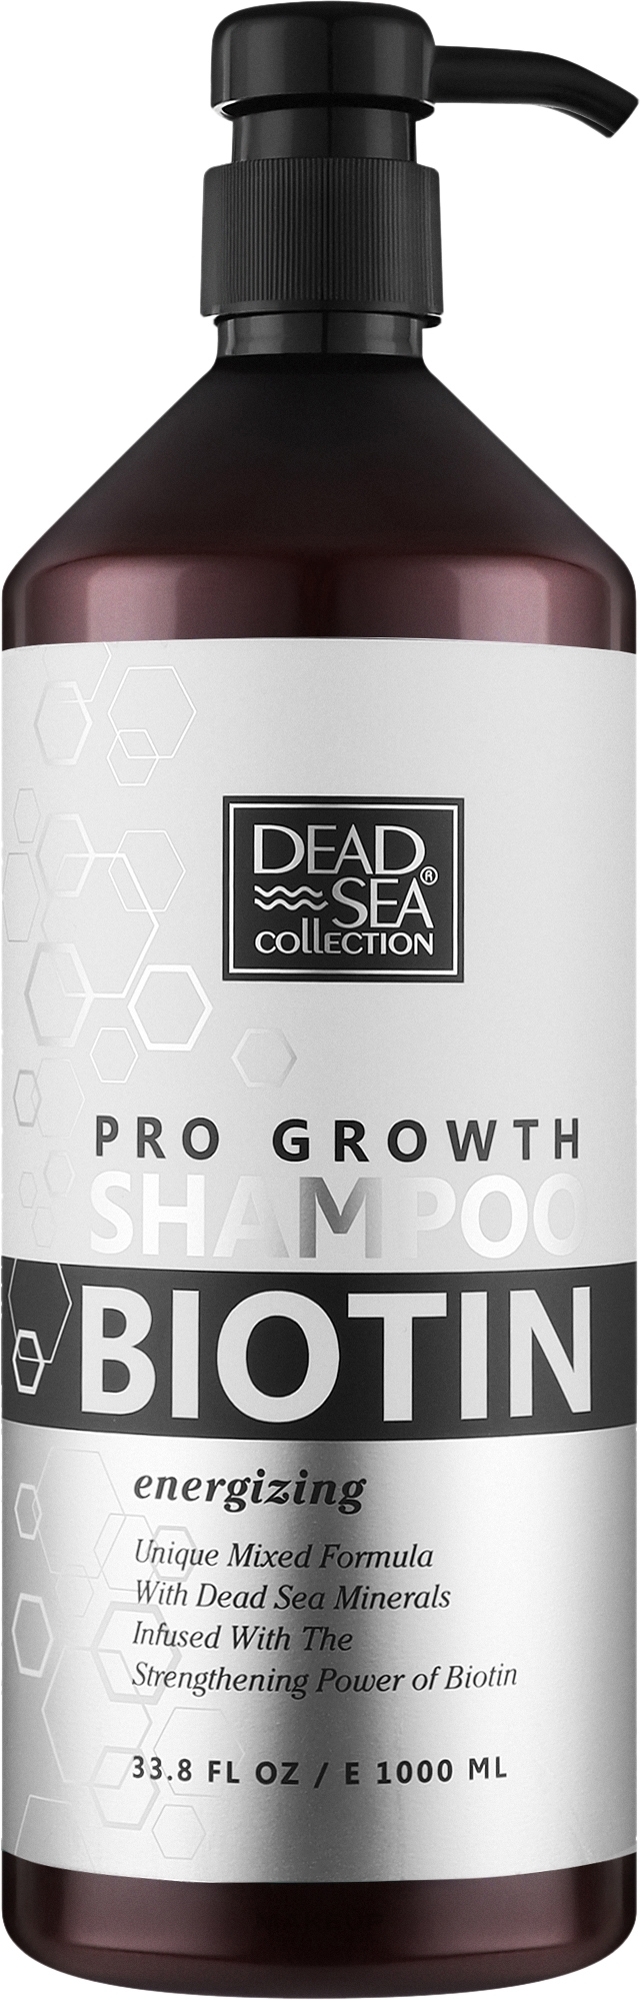 Шампунь для волос с биотином и минералами Мертвого моря - Dead Sea Collection Biotin Shampoo — фото 1000ml